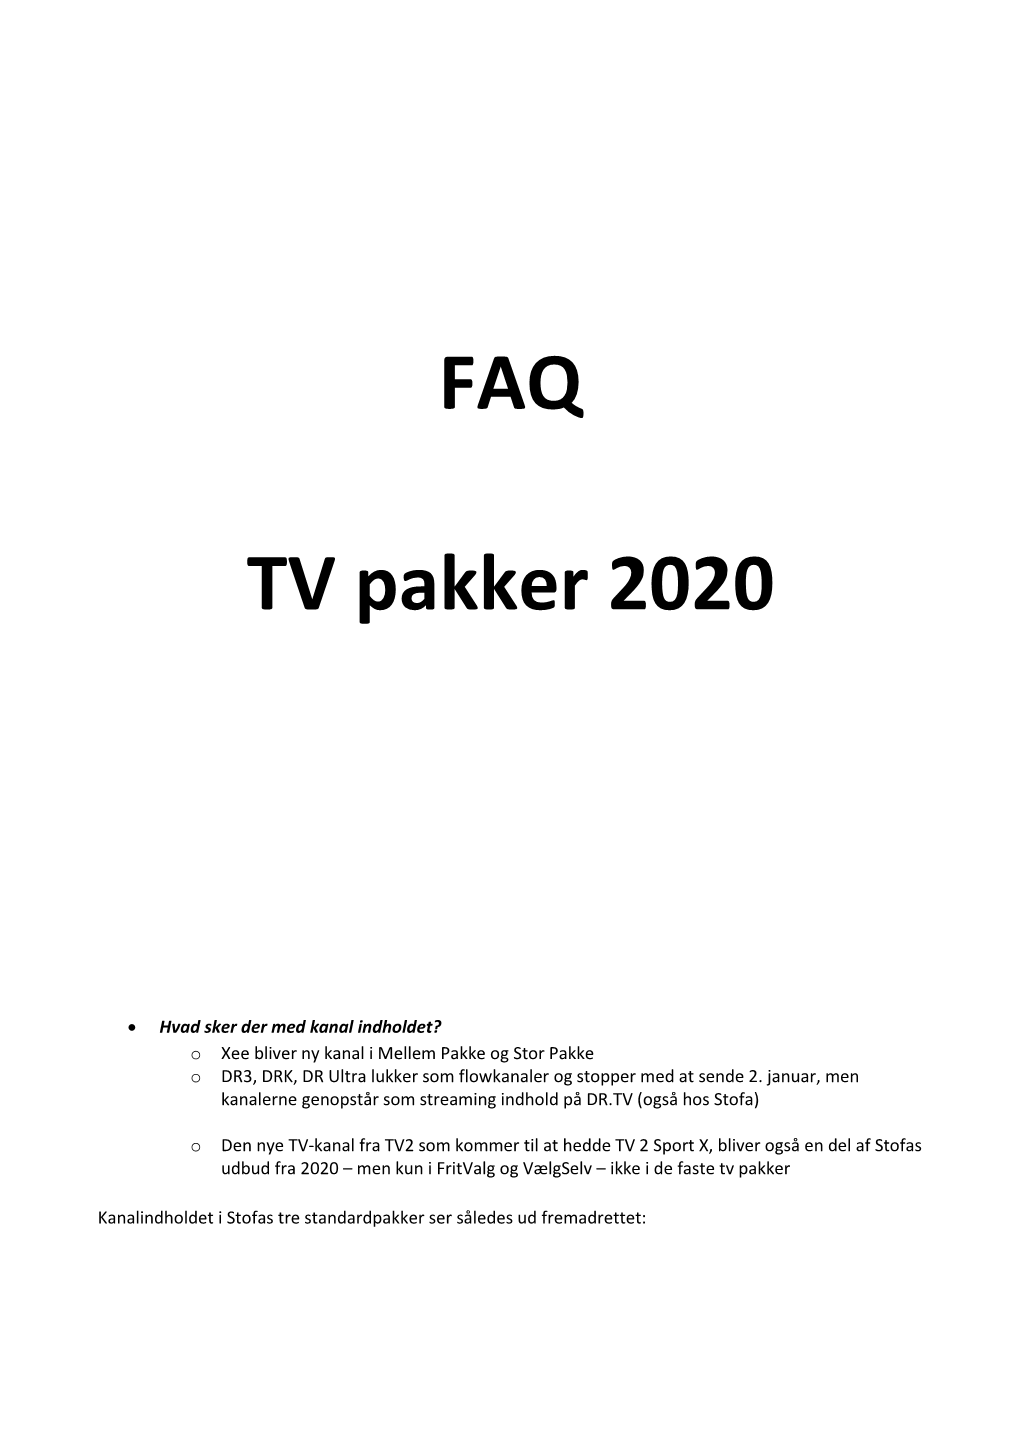 FAQ TV Pakker 2020